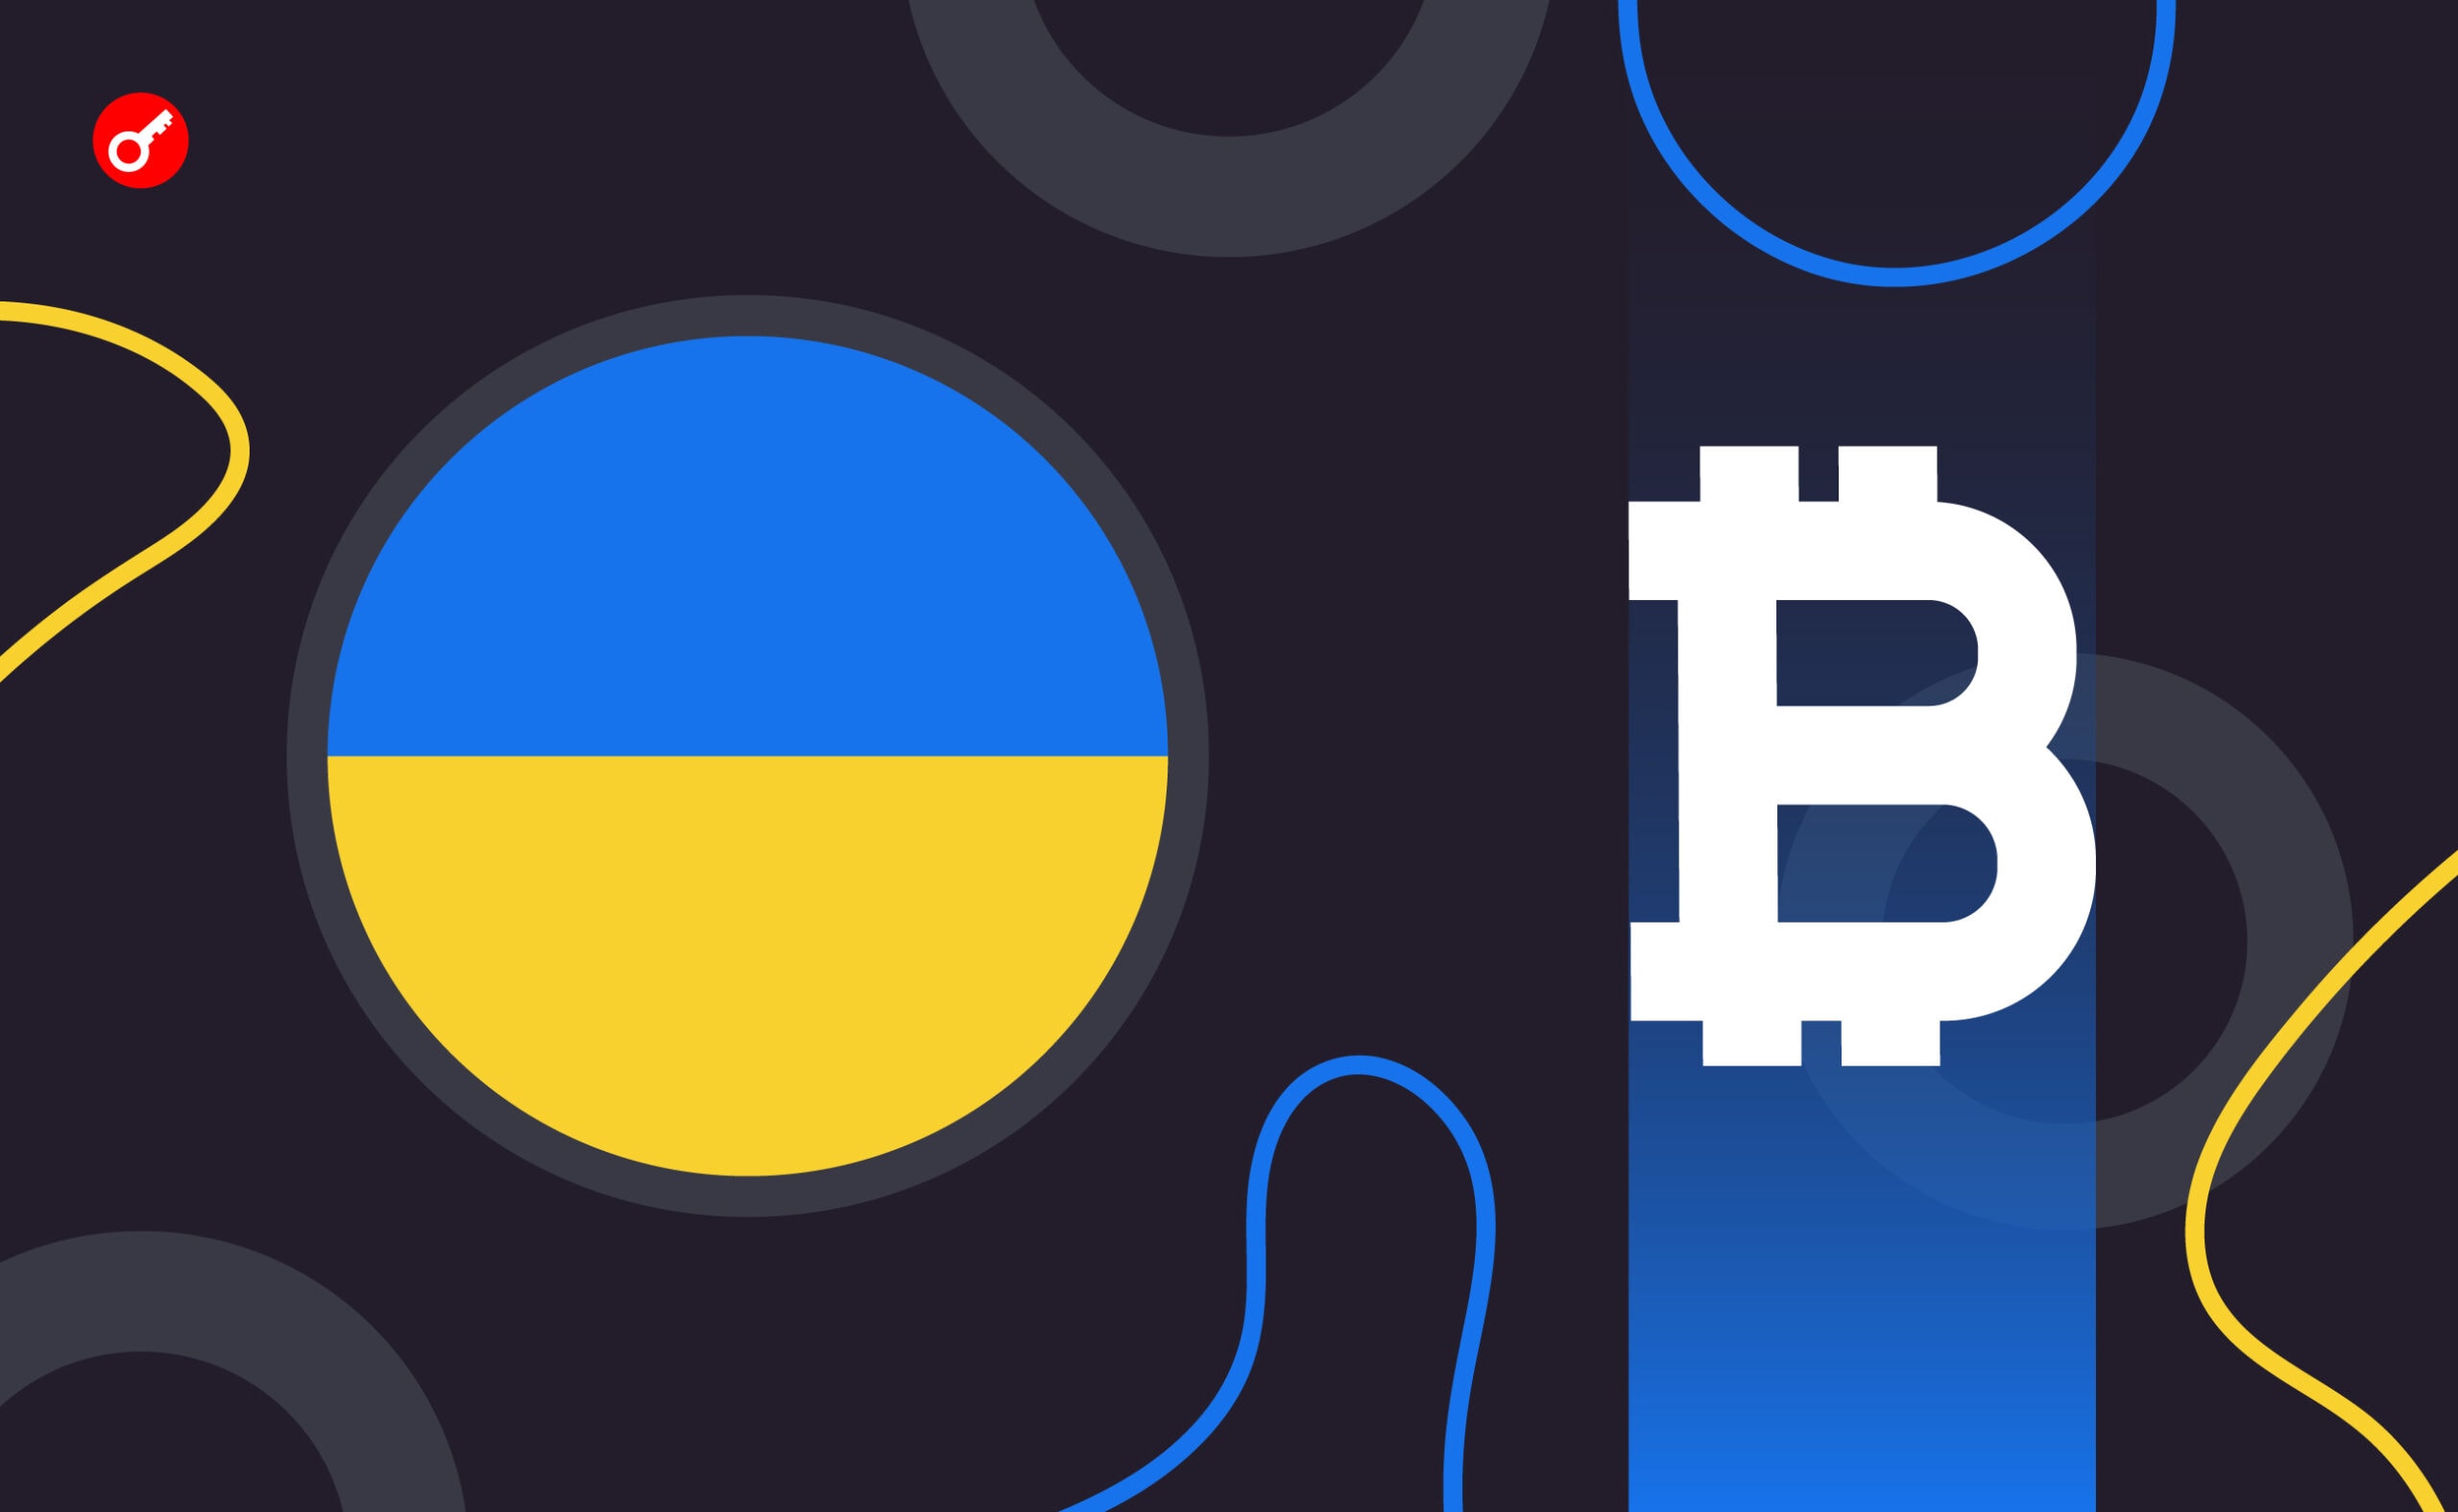 Бизнес оценил попытки властей регулировать криптоиндустрию в Украине. Заглавный коллаж новости.